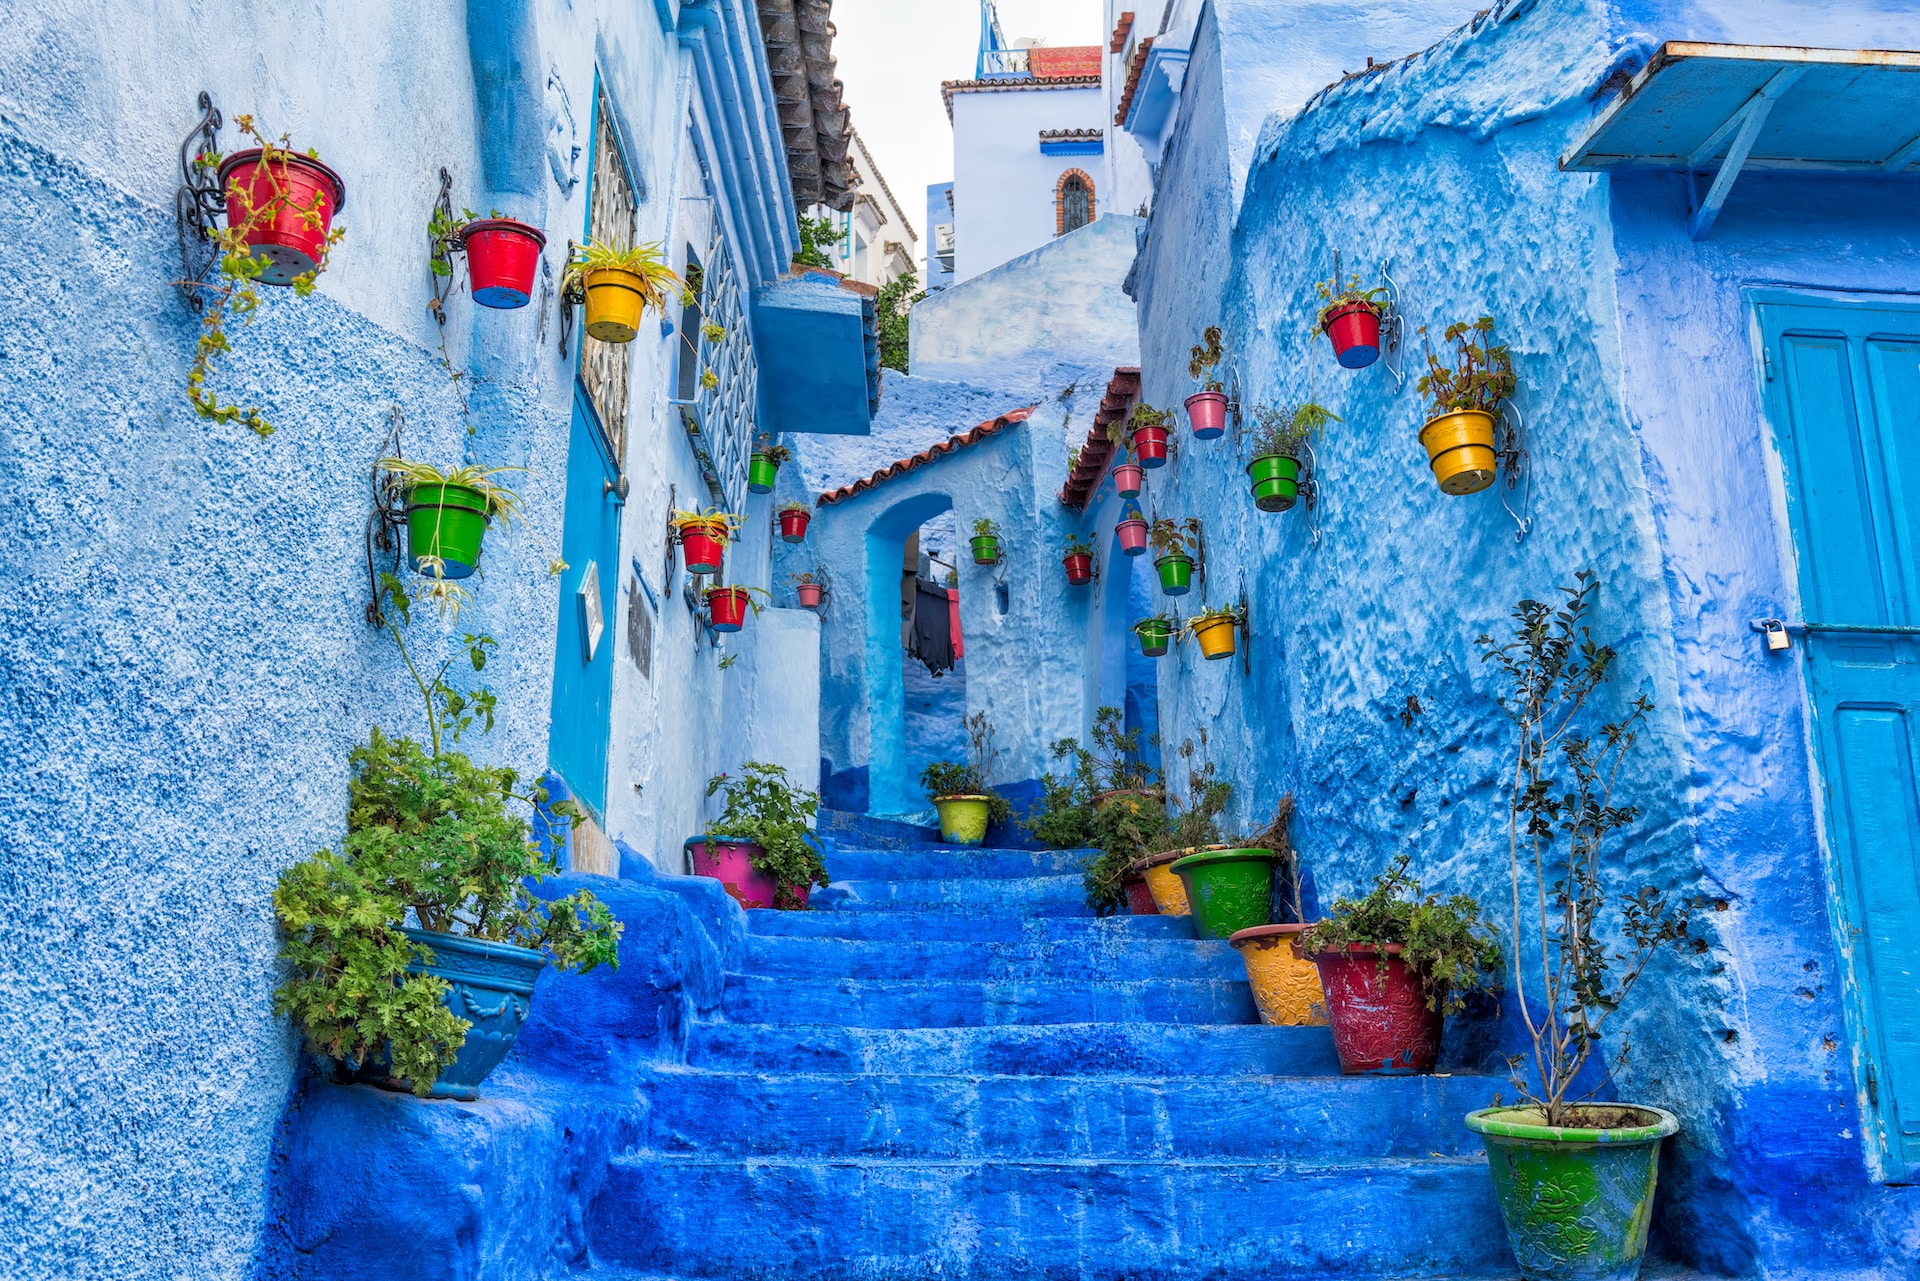 درج أزرقٌ في شفشاون المغرب، على أطرافه وعلى الجدران نباتات صغيرة